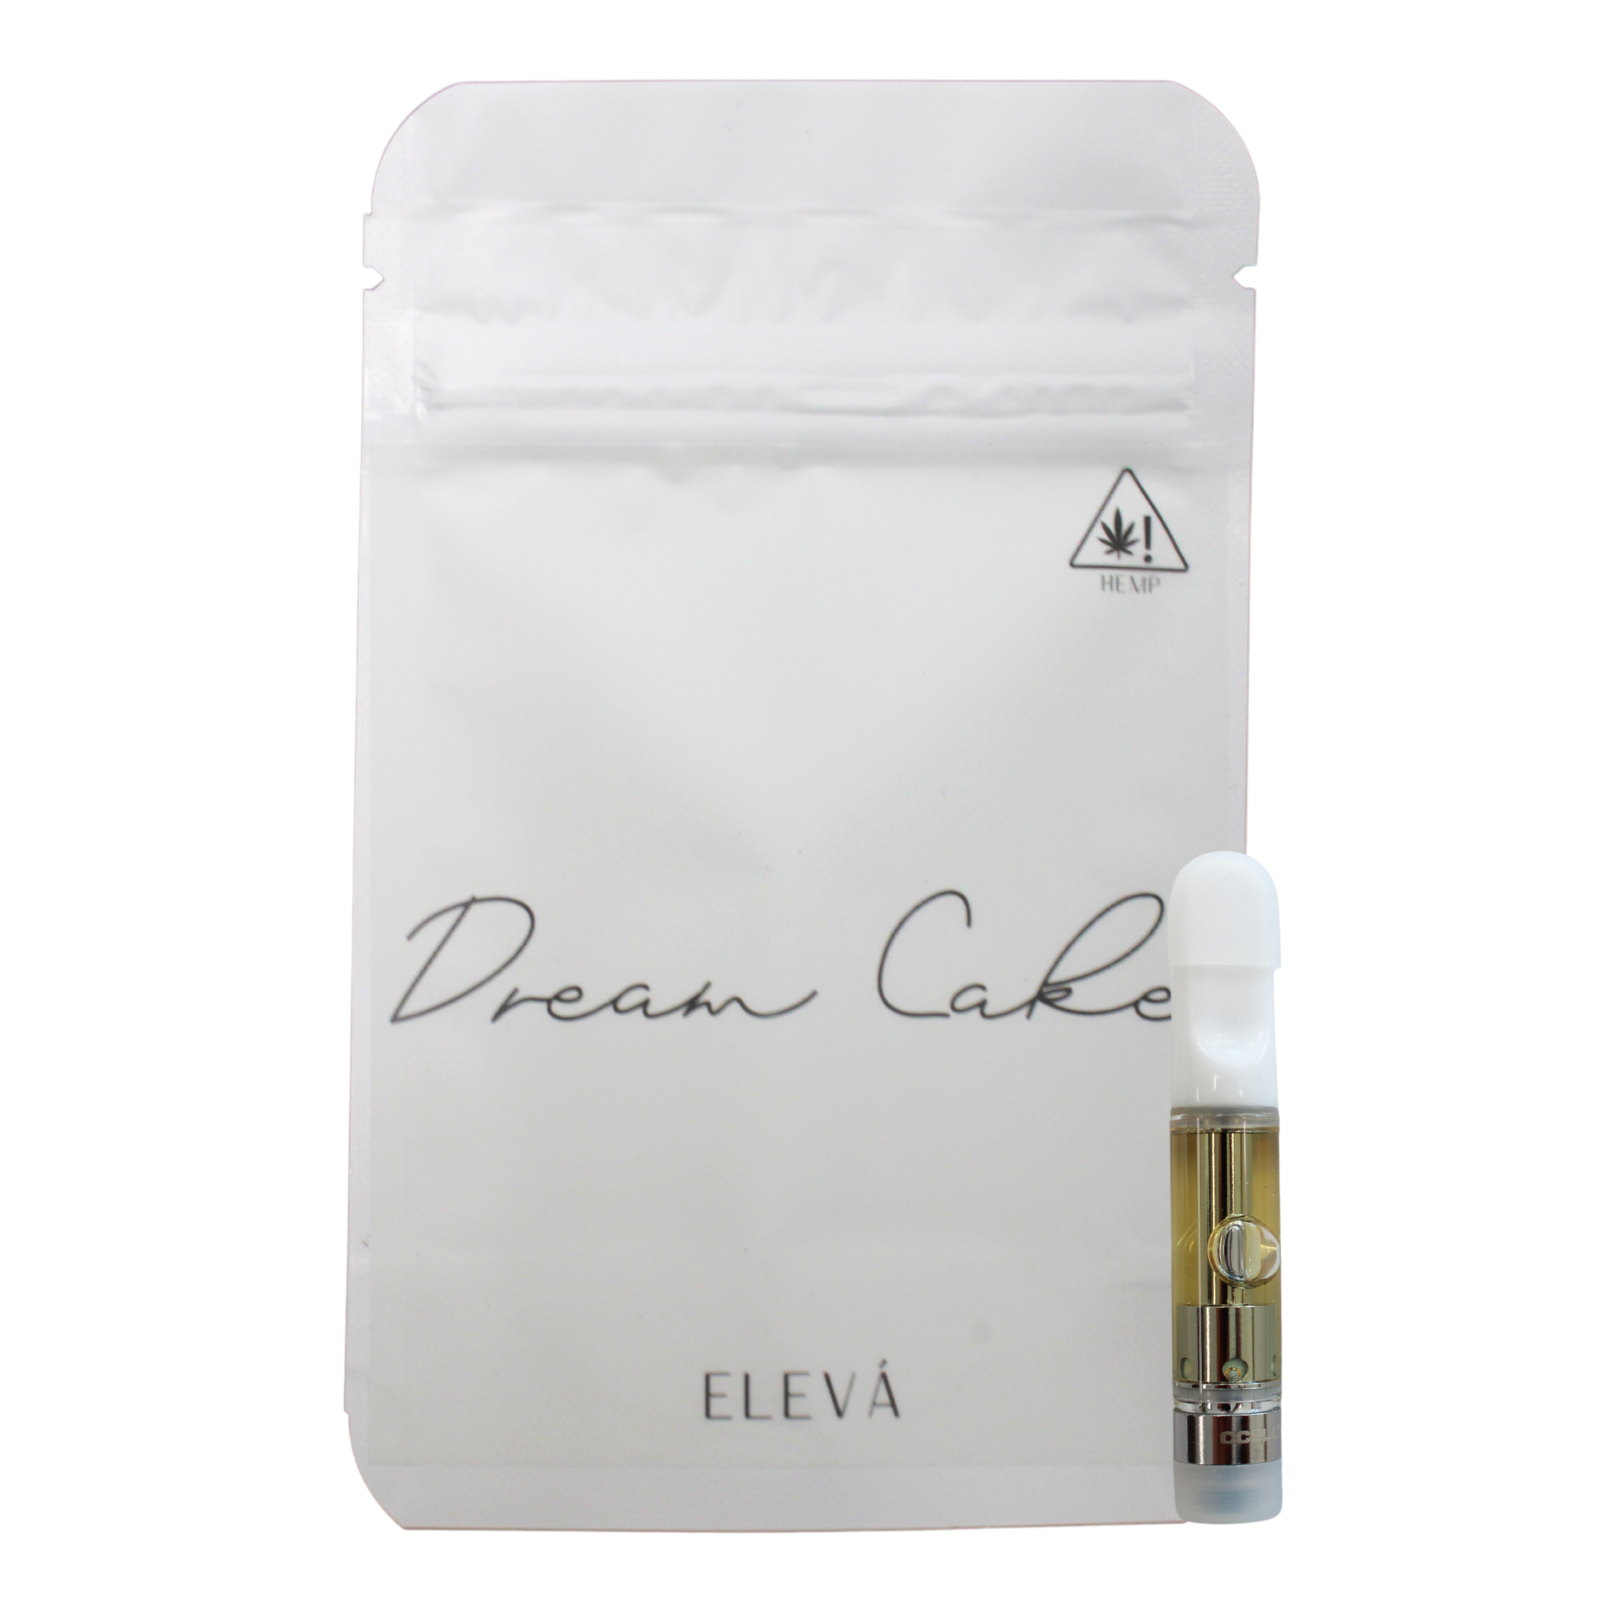 Dream Cake 86% Delta 8 THC Vape Cartridge 1 gram - $39.99